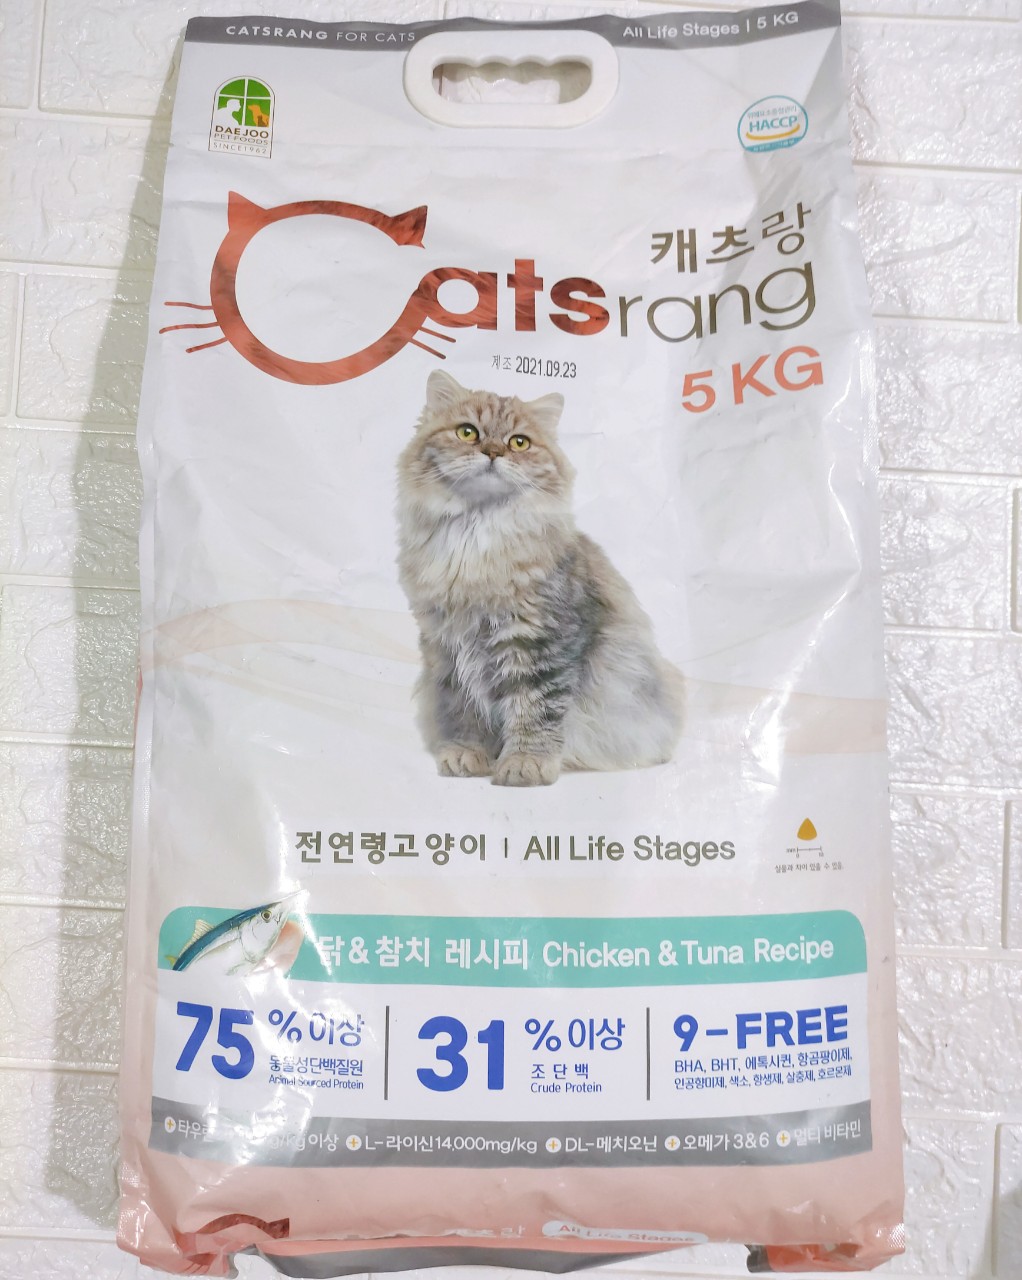 Thức Ăn Hạt Khô Dành Riêng Cho Mèo Cưng Catsrang Bao 5kg